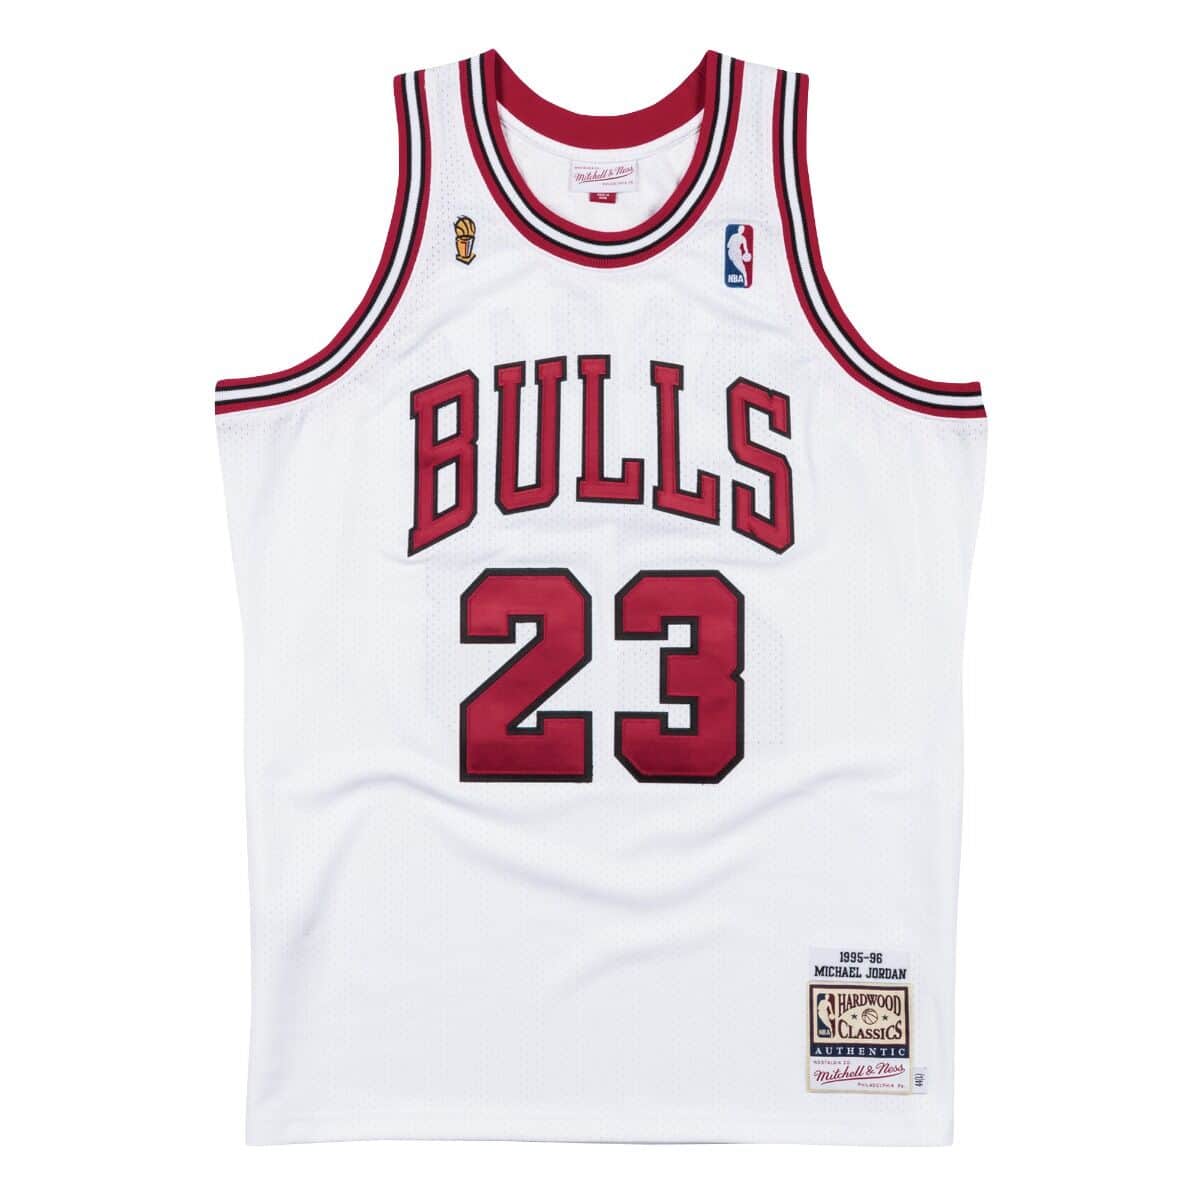 Authentic Jersey Chicago Bulls 1995-96 Michael Jordans